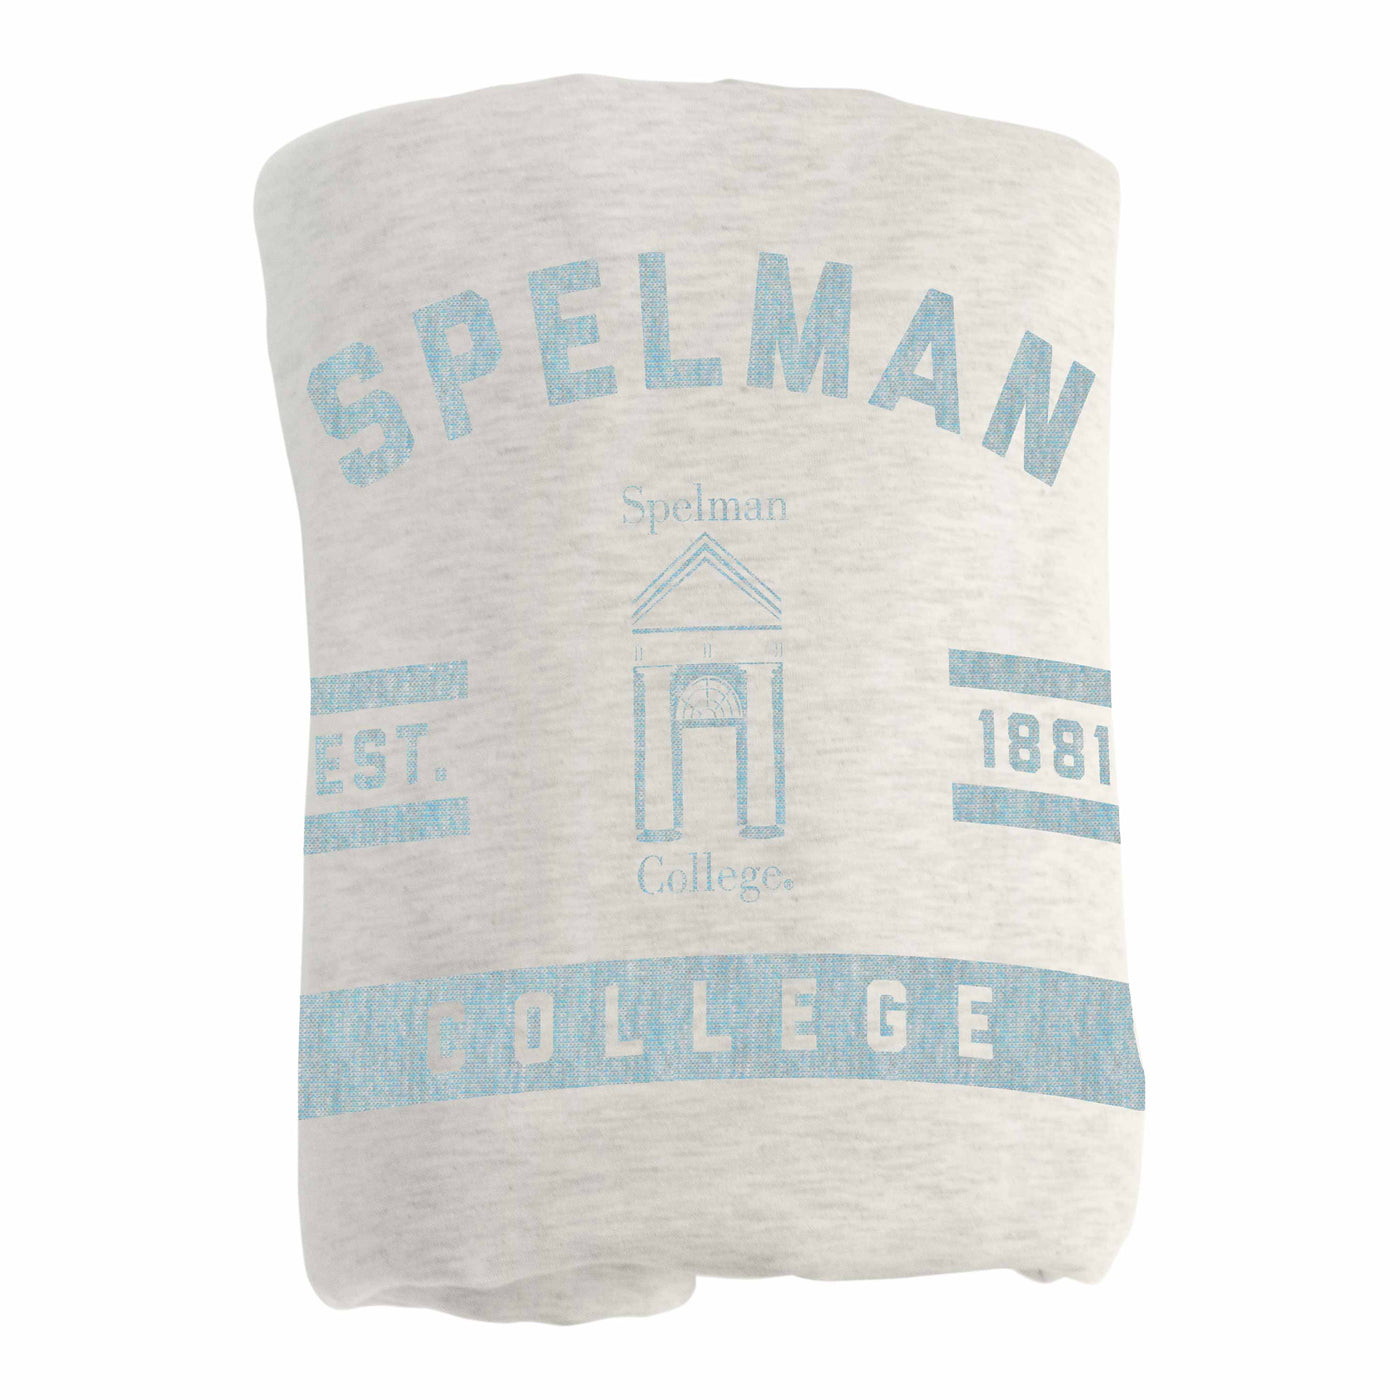 Spelman College Sublimated Sweatshirt Blanket